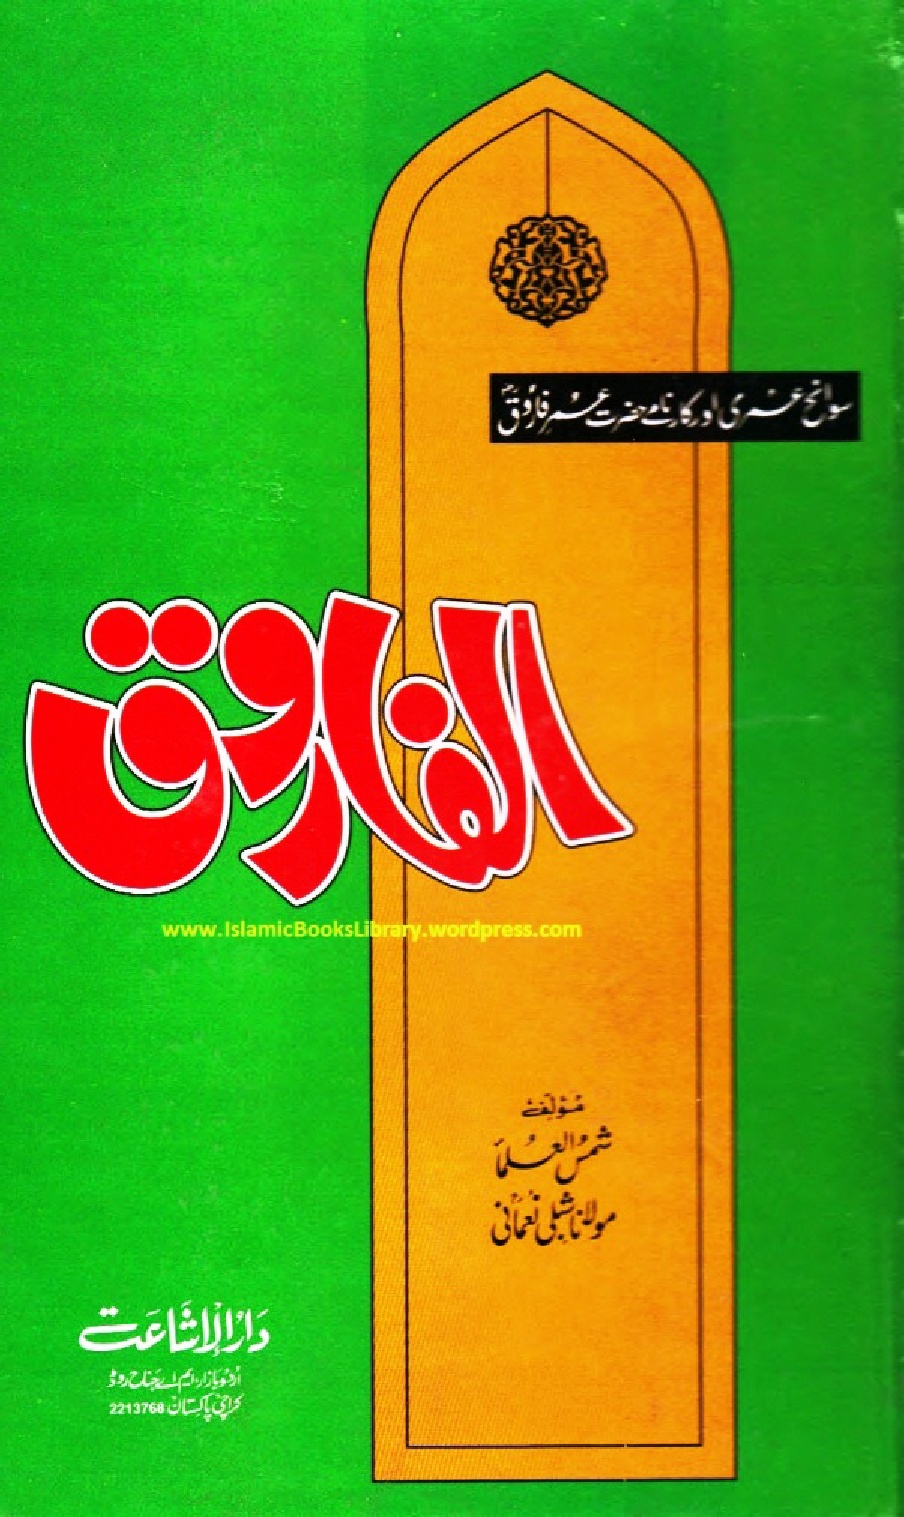 Al Farooq by Allama Shibli Nomani